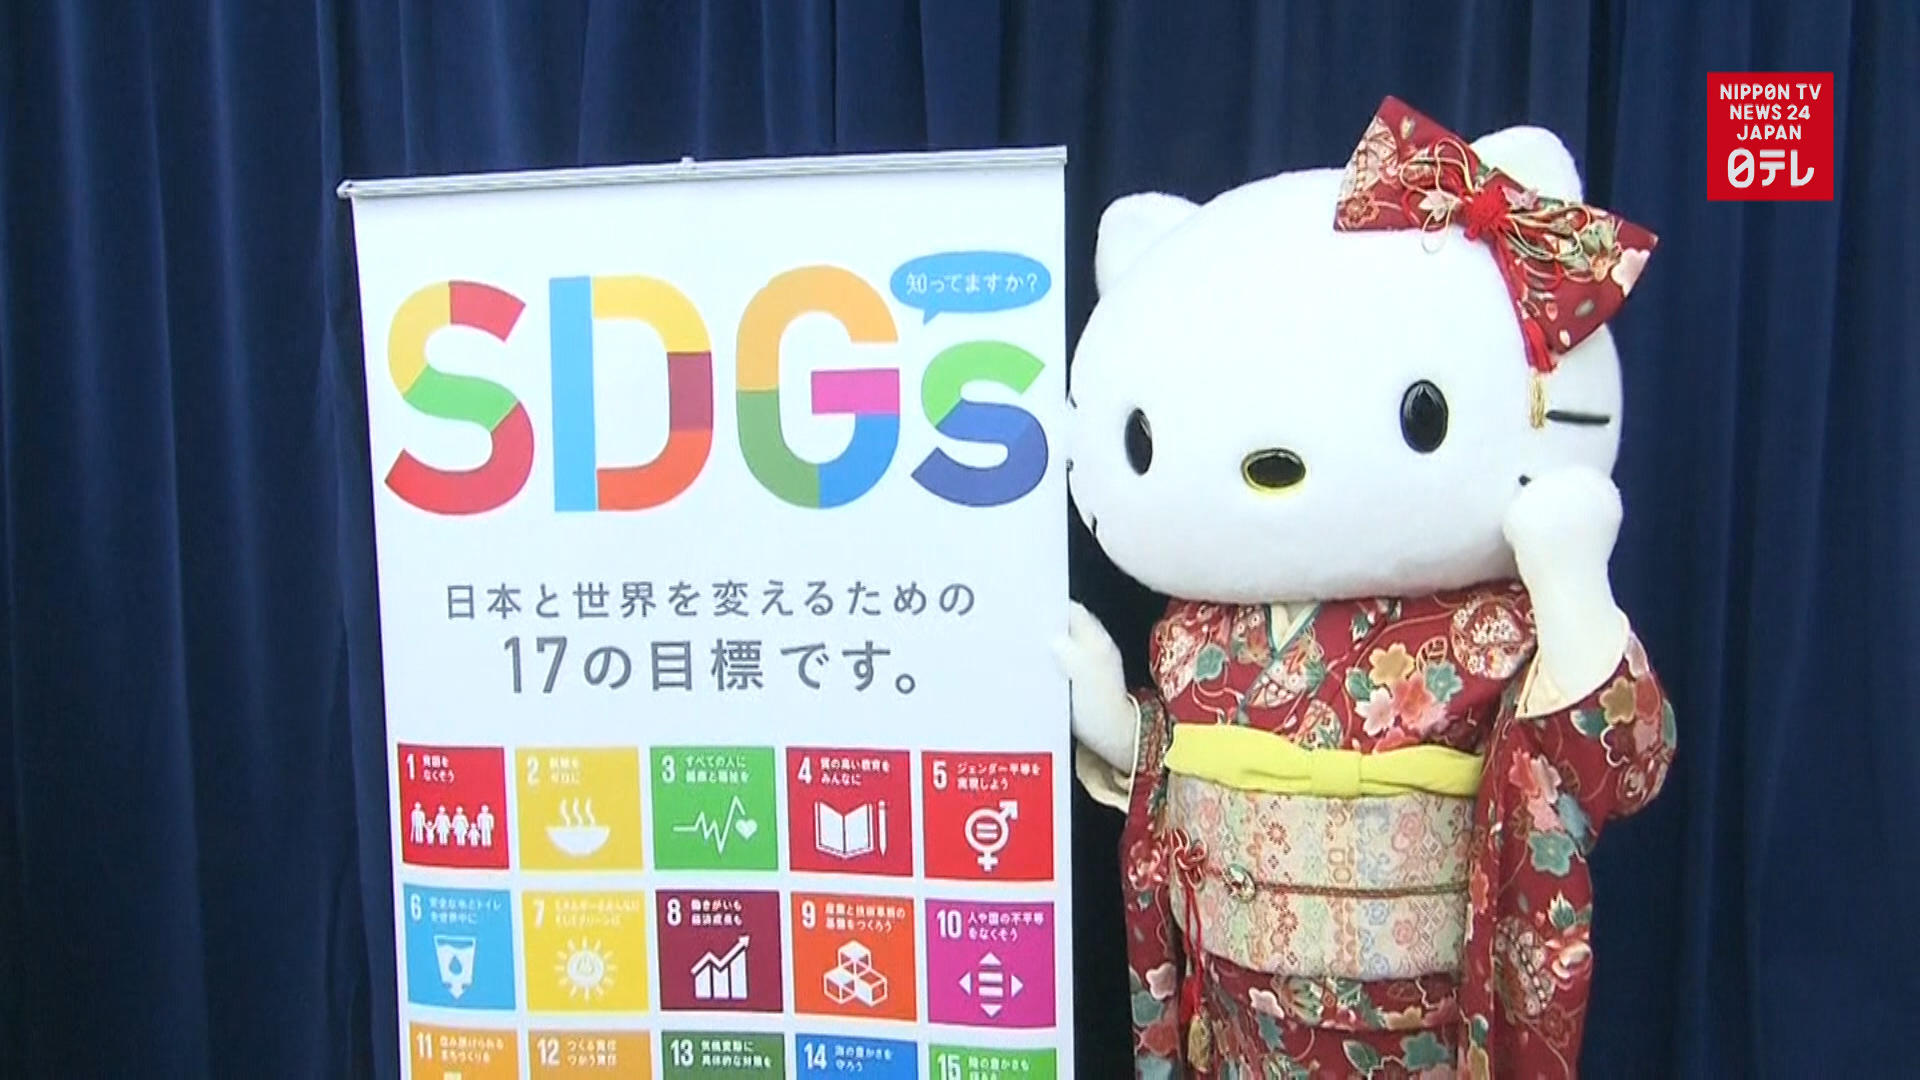 Hello Kitty promotes SDGs at UN